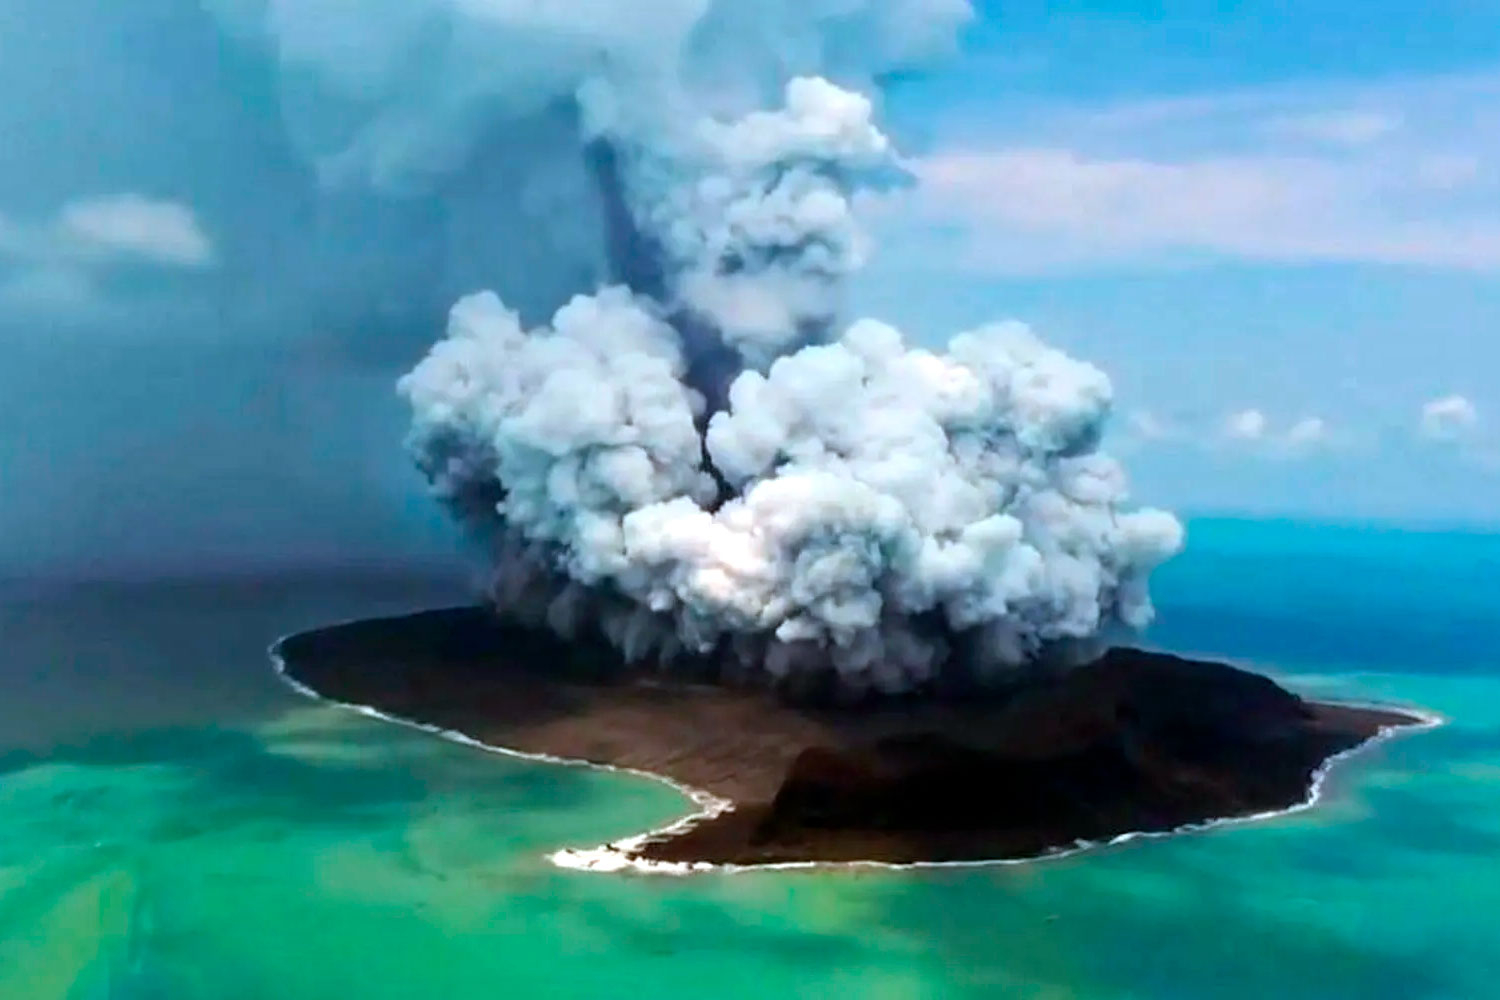 Остров Baby появился в Тихом океане после извержения подводного вулкана